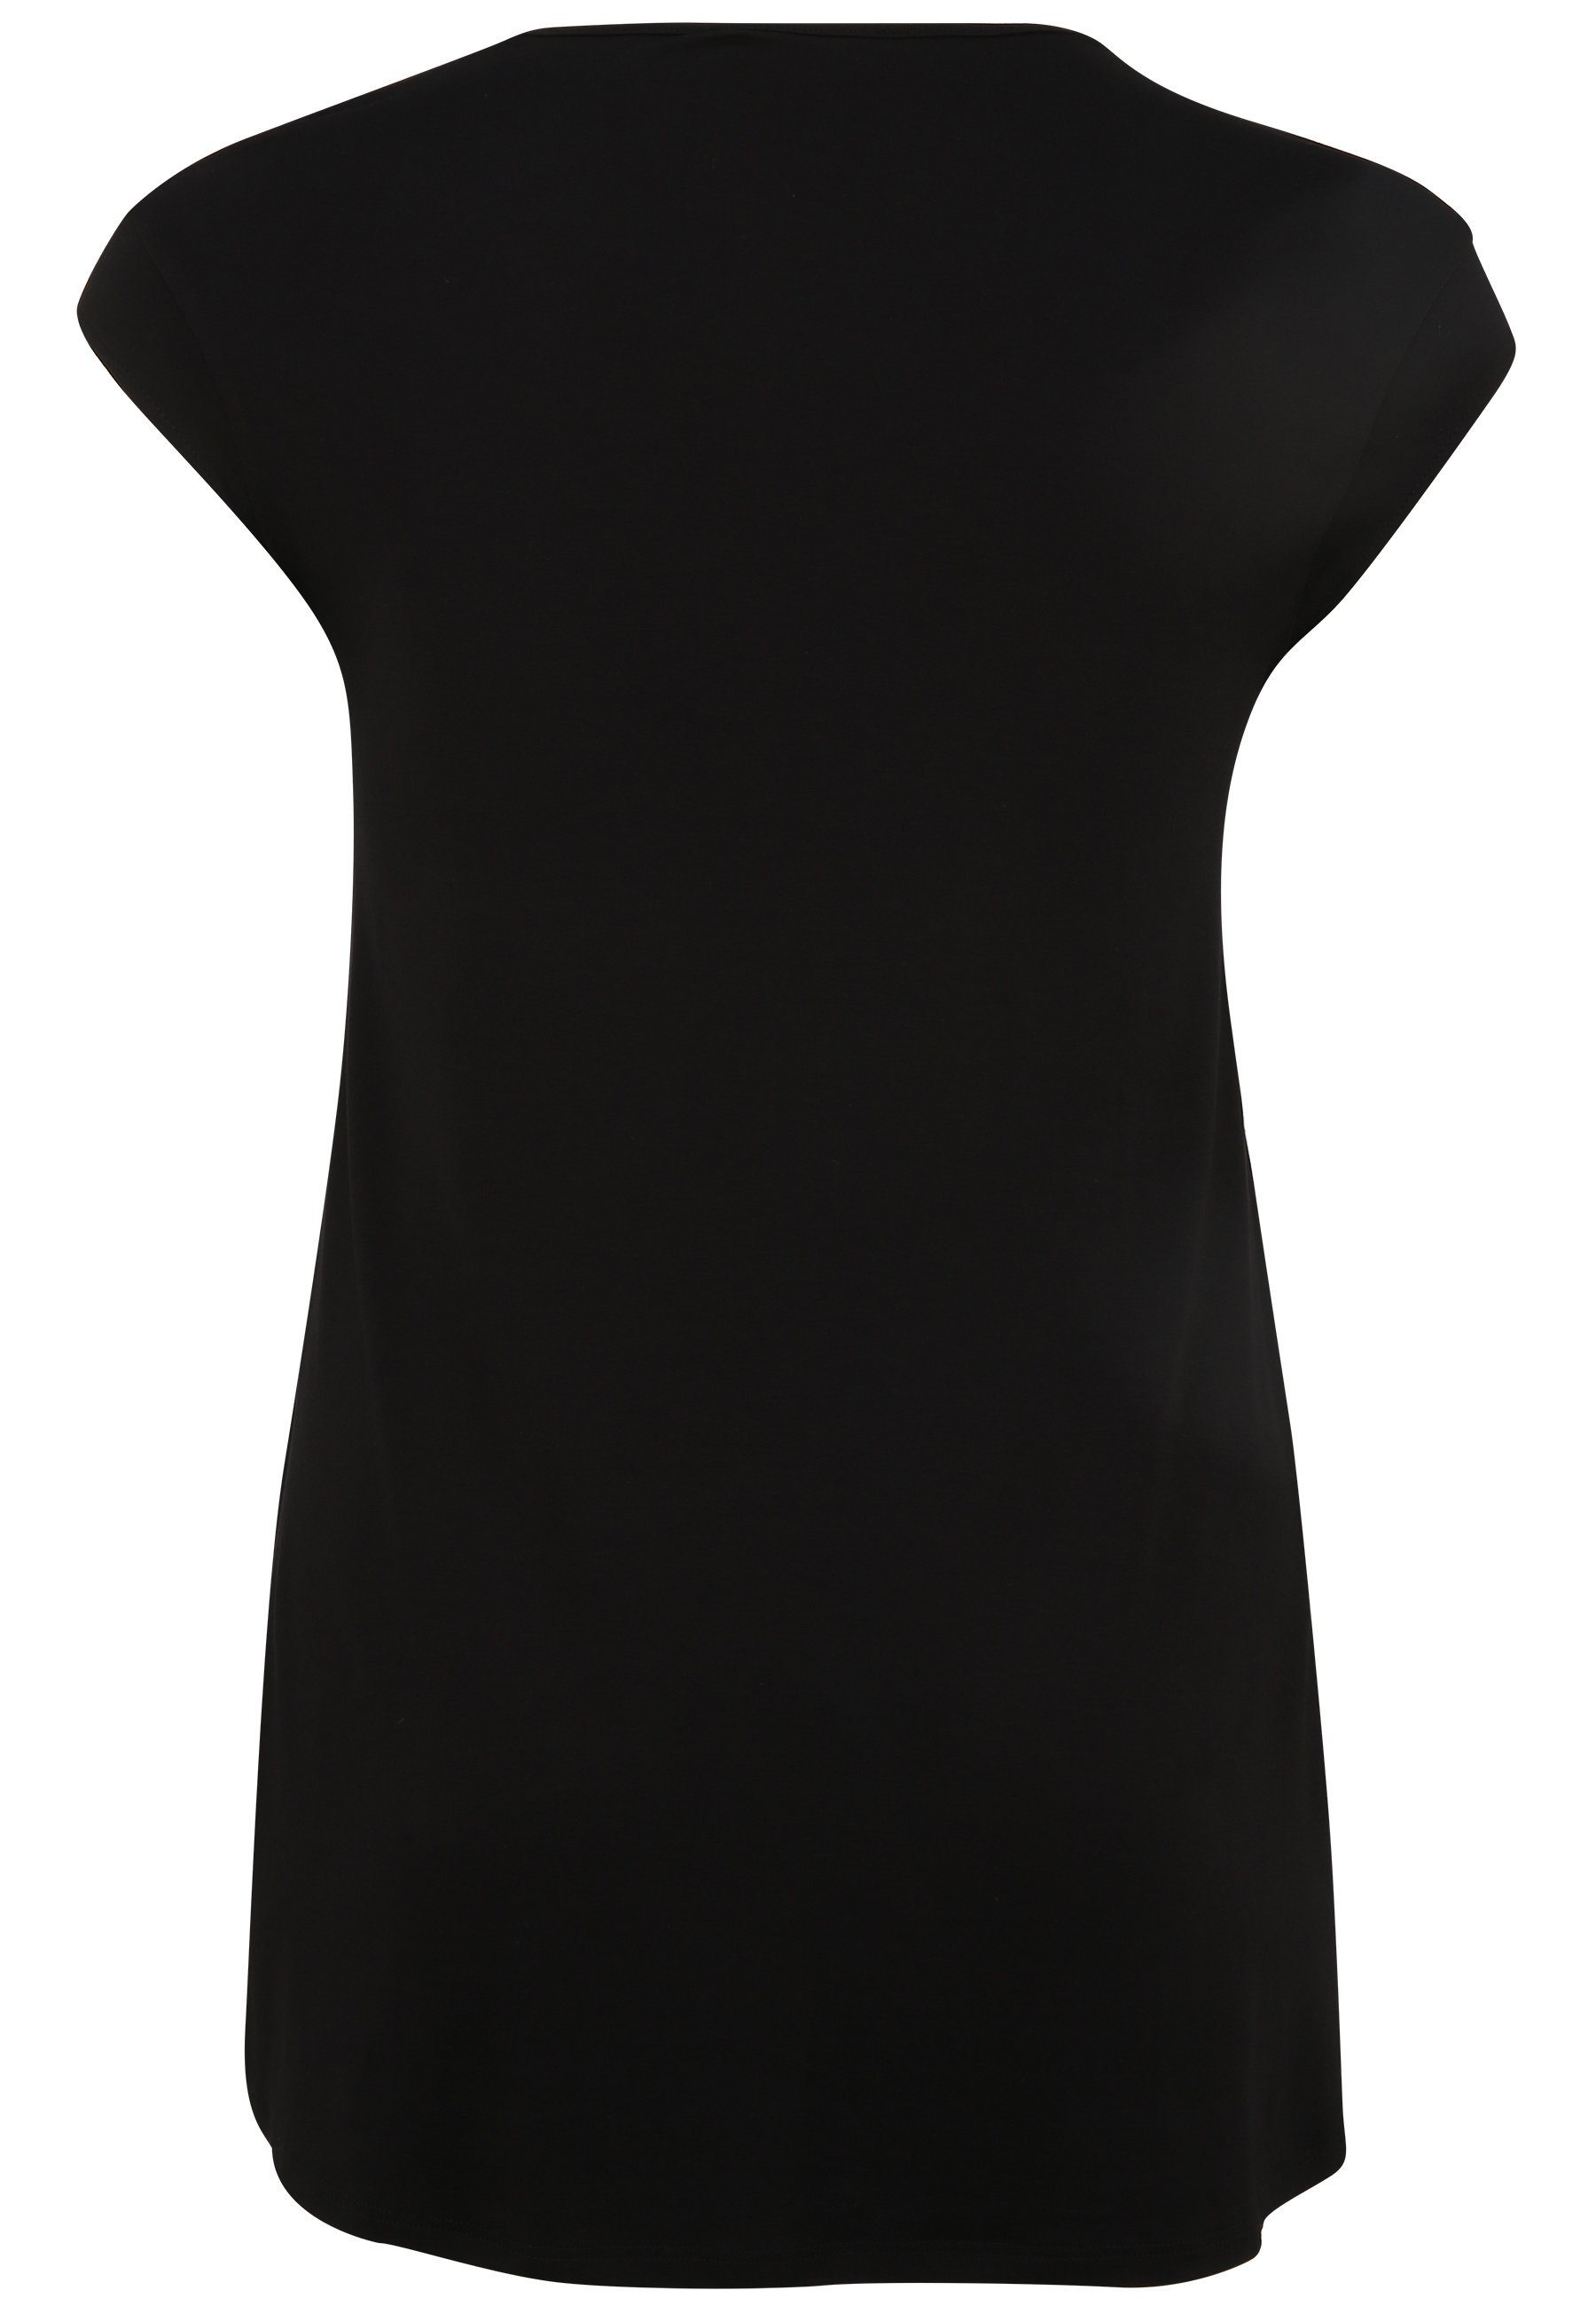 Doris Streich Shirtbluse mit Kurzarm schwarz